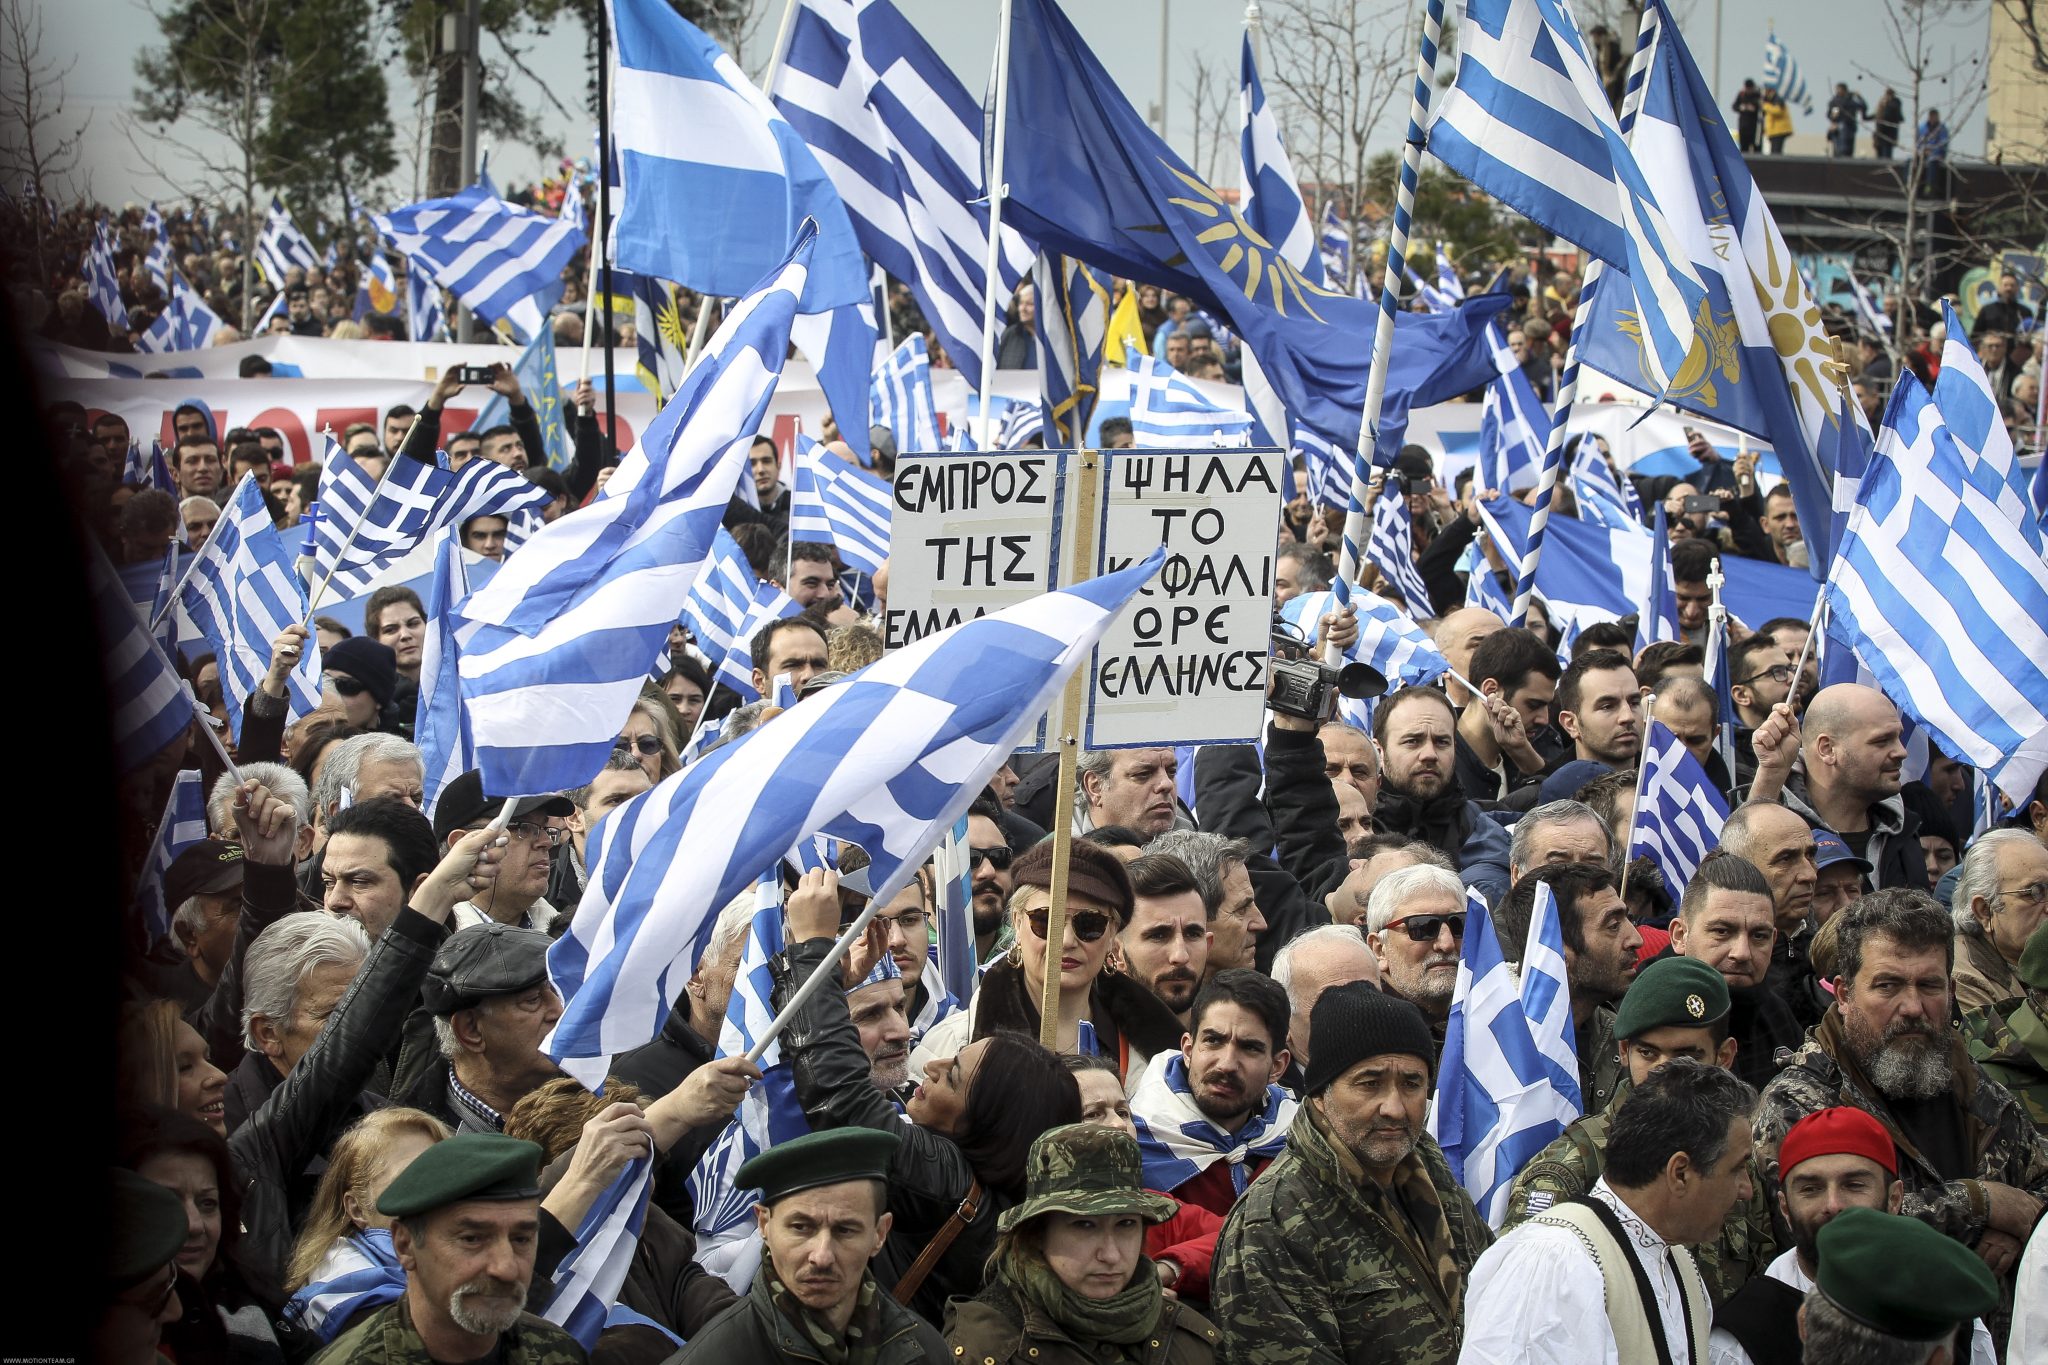 Θεσσαλονίκη: Σοκ από την δολοφονική επίθεση αγνώστων σε νεαρό με την Ελληνική σημαία